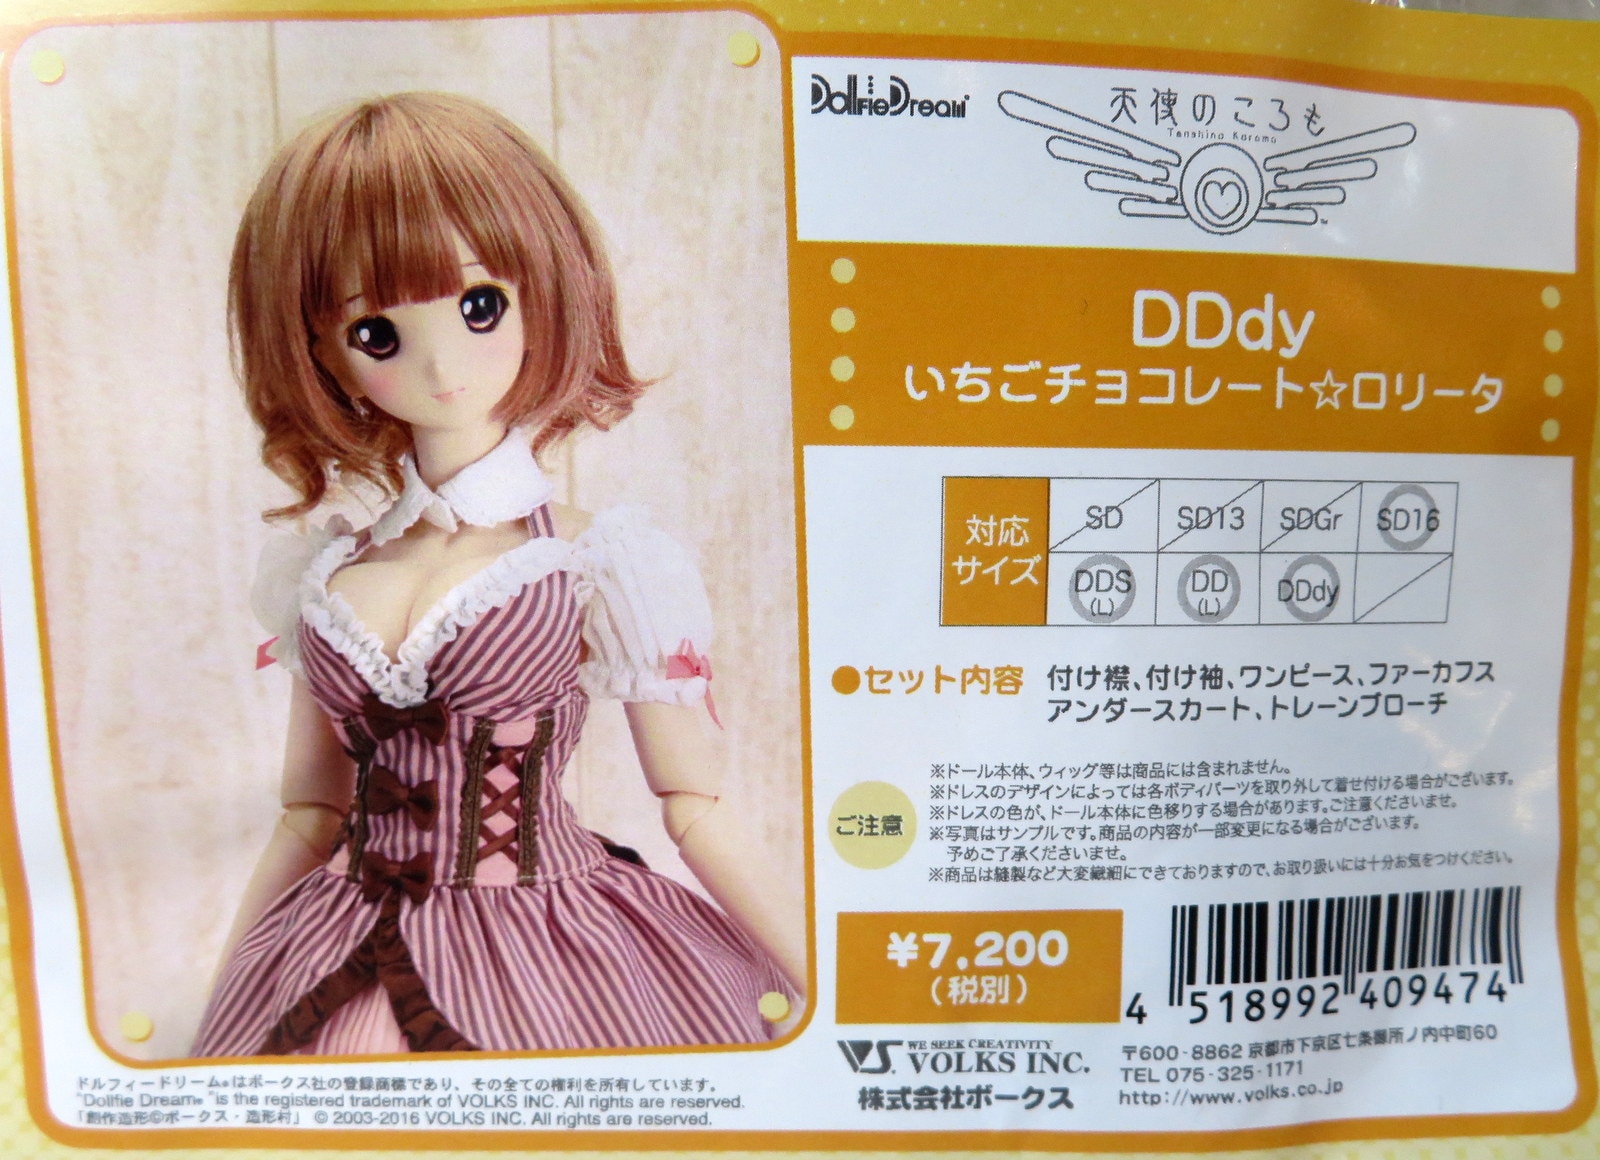 ボークス DDdy DDS DD SD16 いちごチョコレート☆ロリータ